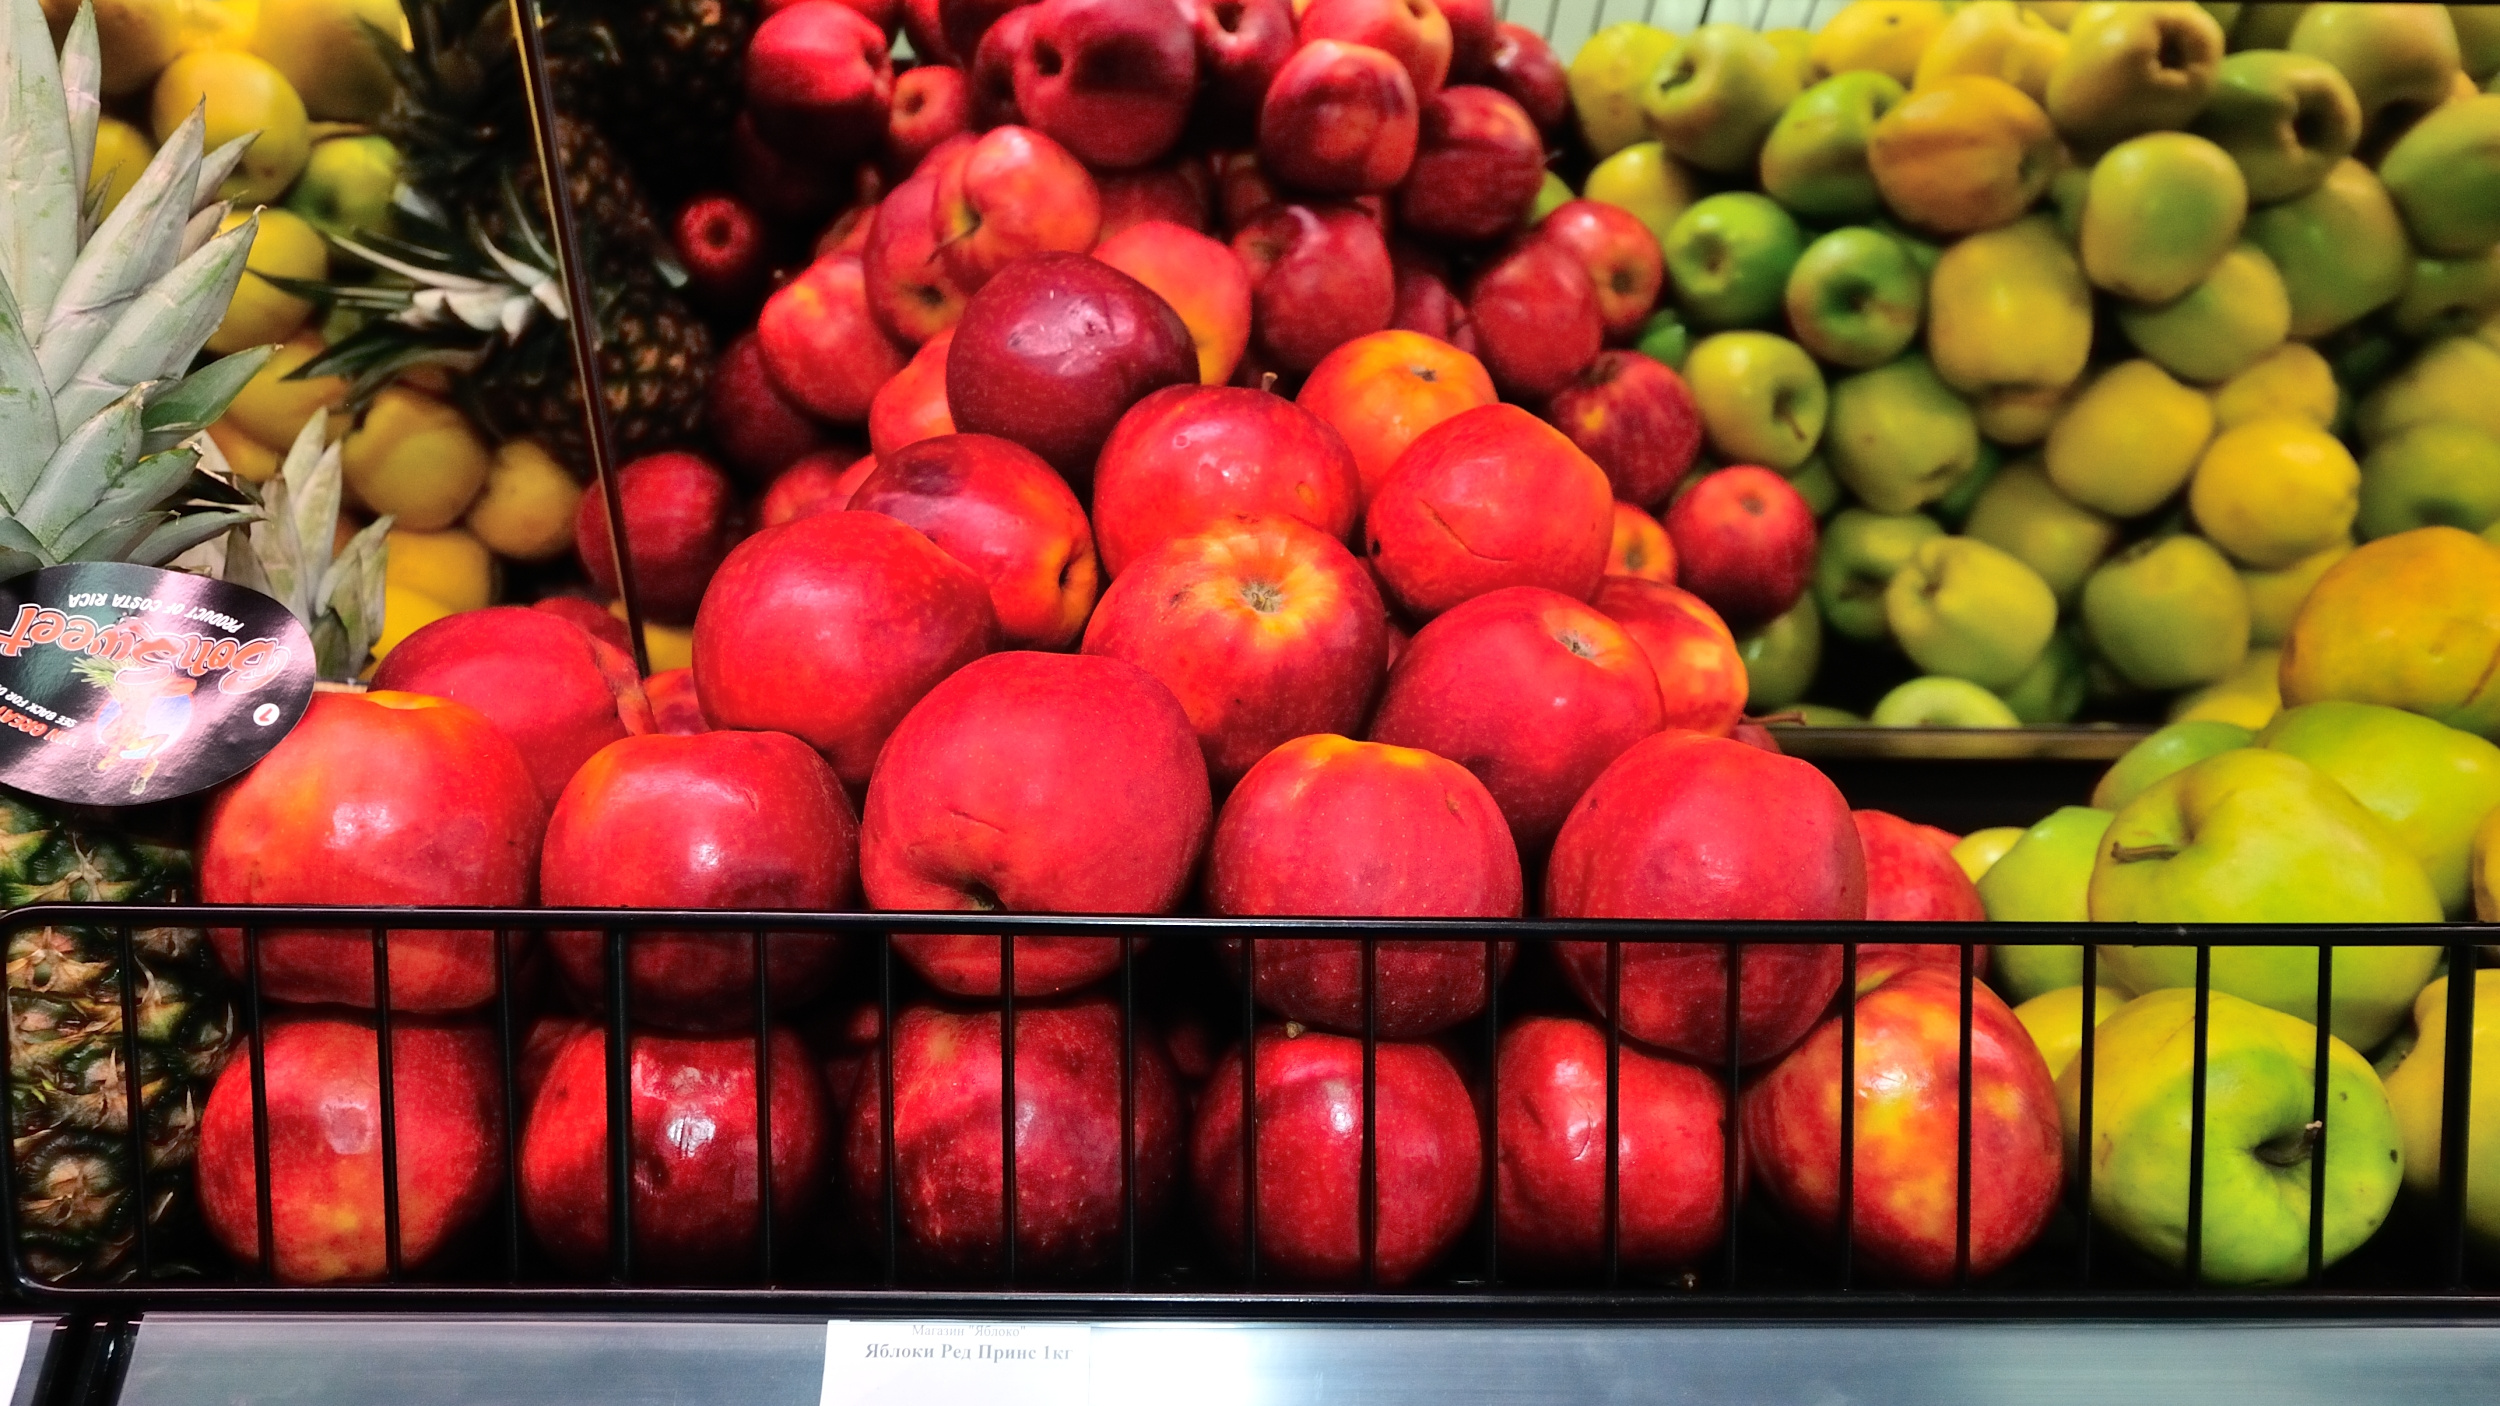 Из 8 кг фруктов. Килограмм фруктов как выглядит. Где купить яблоки в Прохладном на рынке в июле 22 года-.